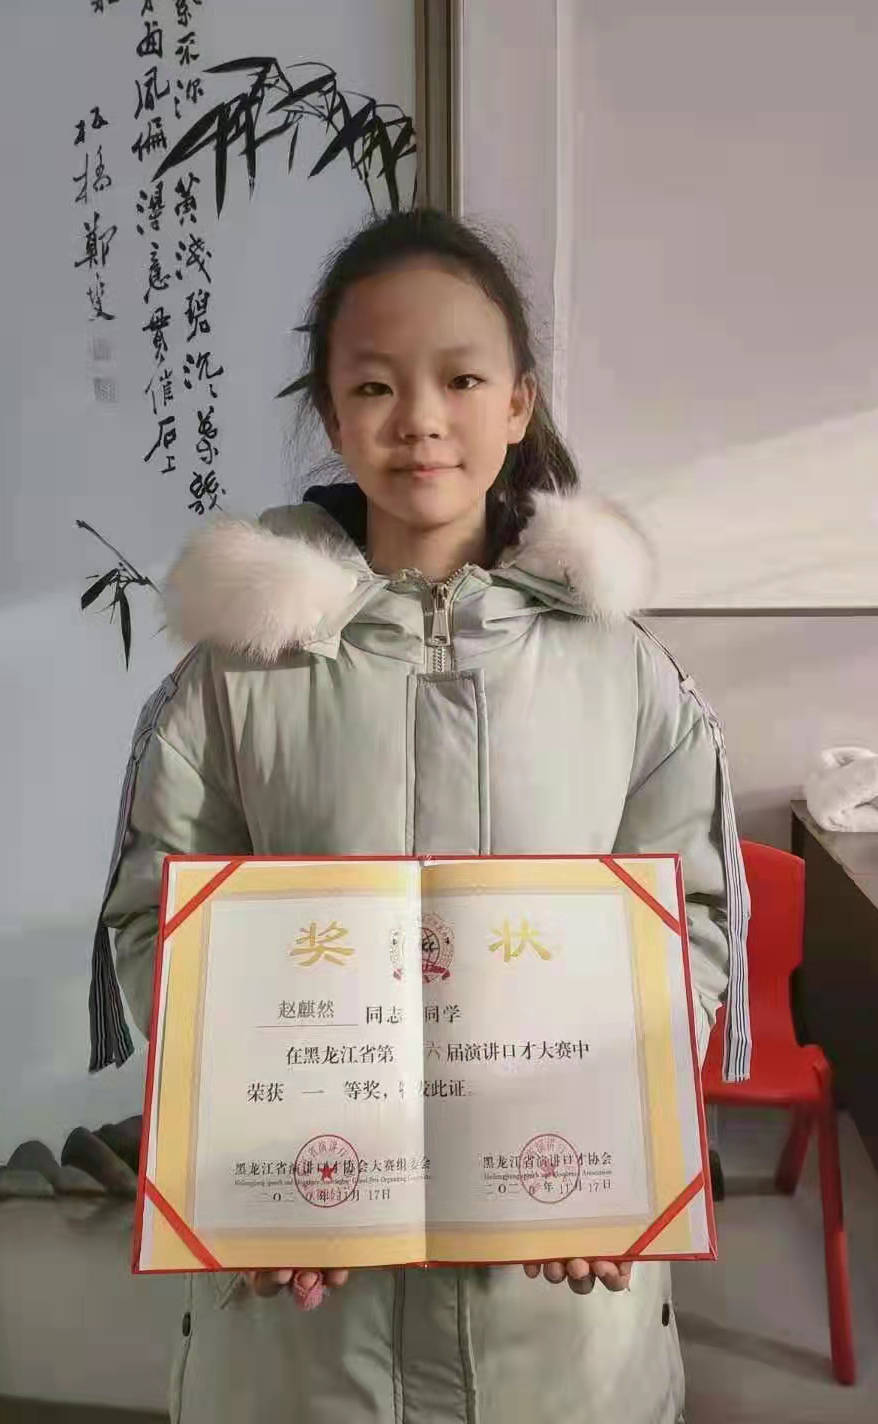 赵麒然,女,12岁,现就读于黑龙江省望奎县第三中学